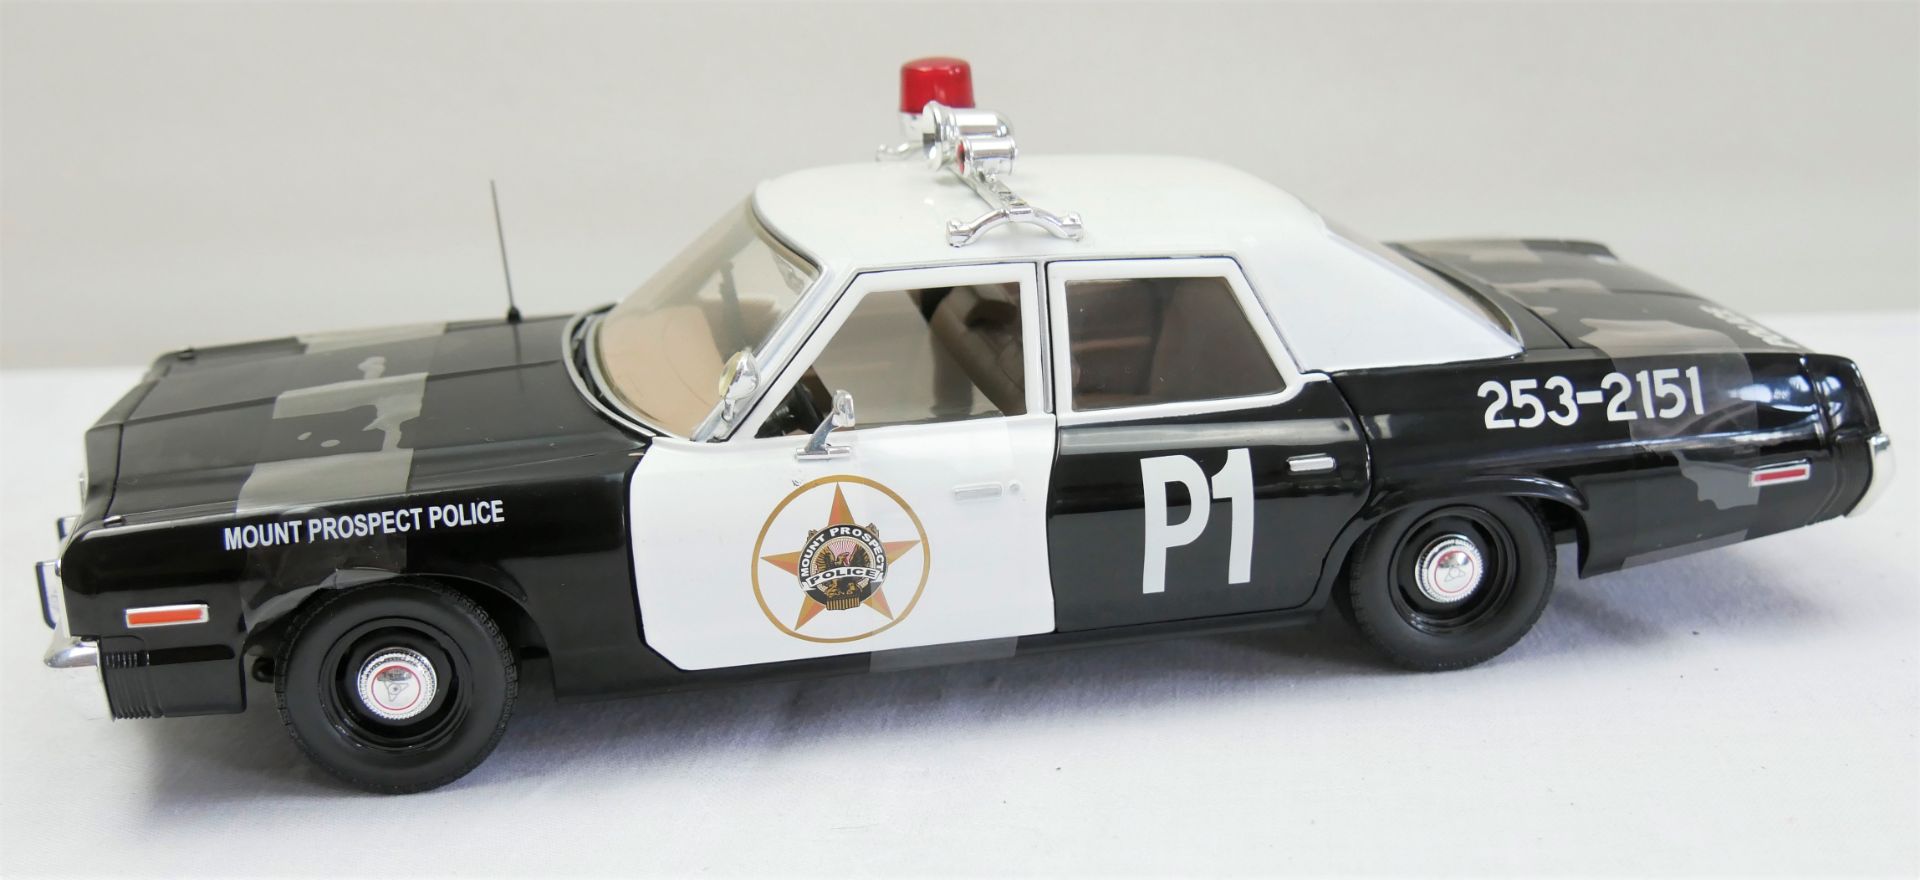 Aus Sammelauflösung! Dodge, "Mount Prospect Police" schwarz metallic, weiß, Modellauto RC2.